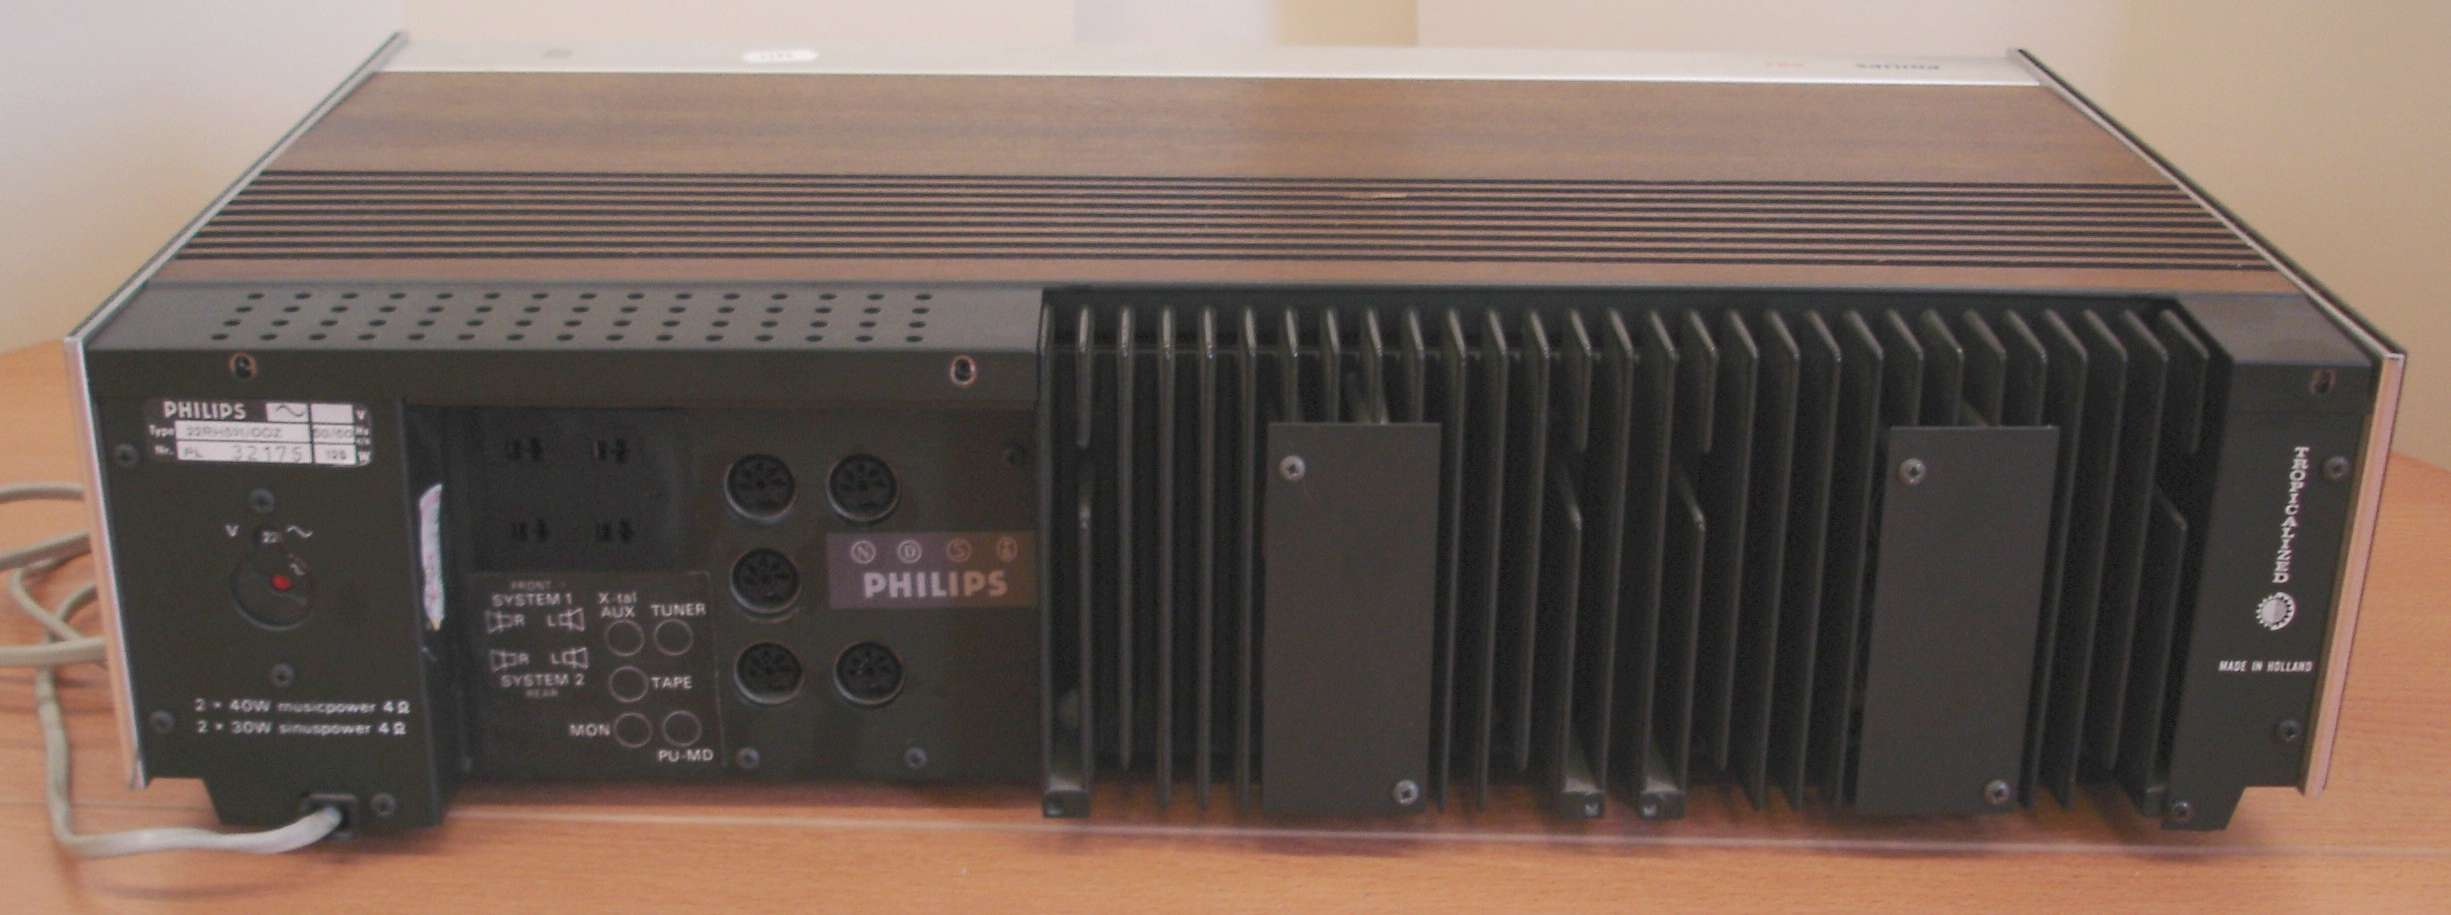 Philips RH521, arrière